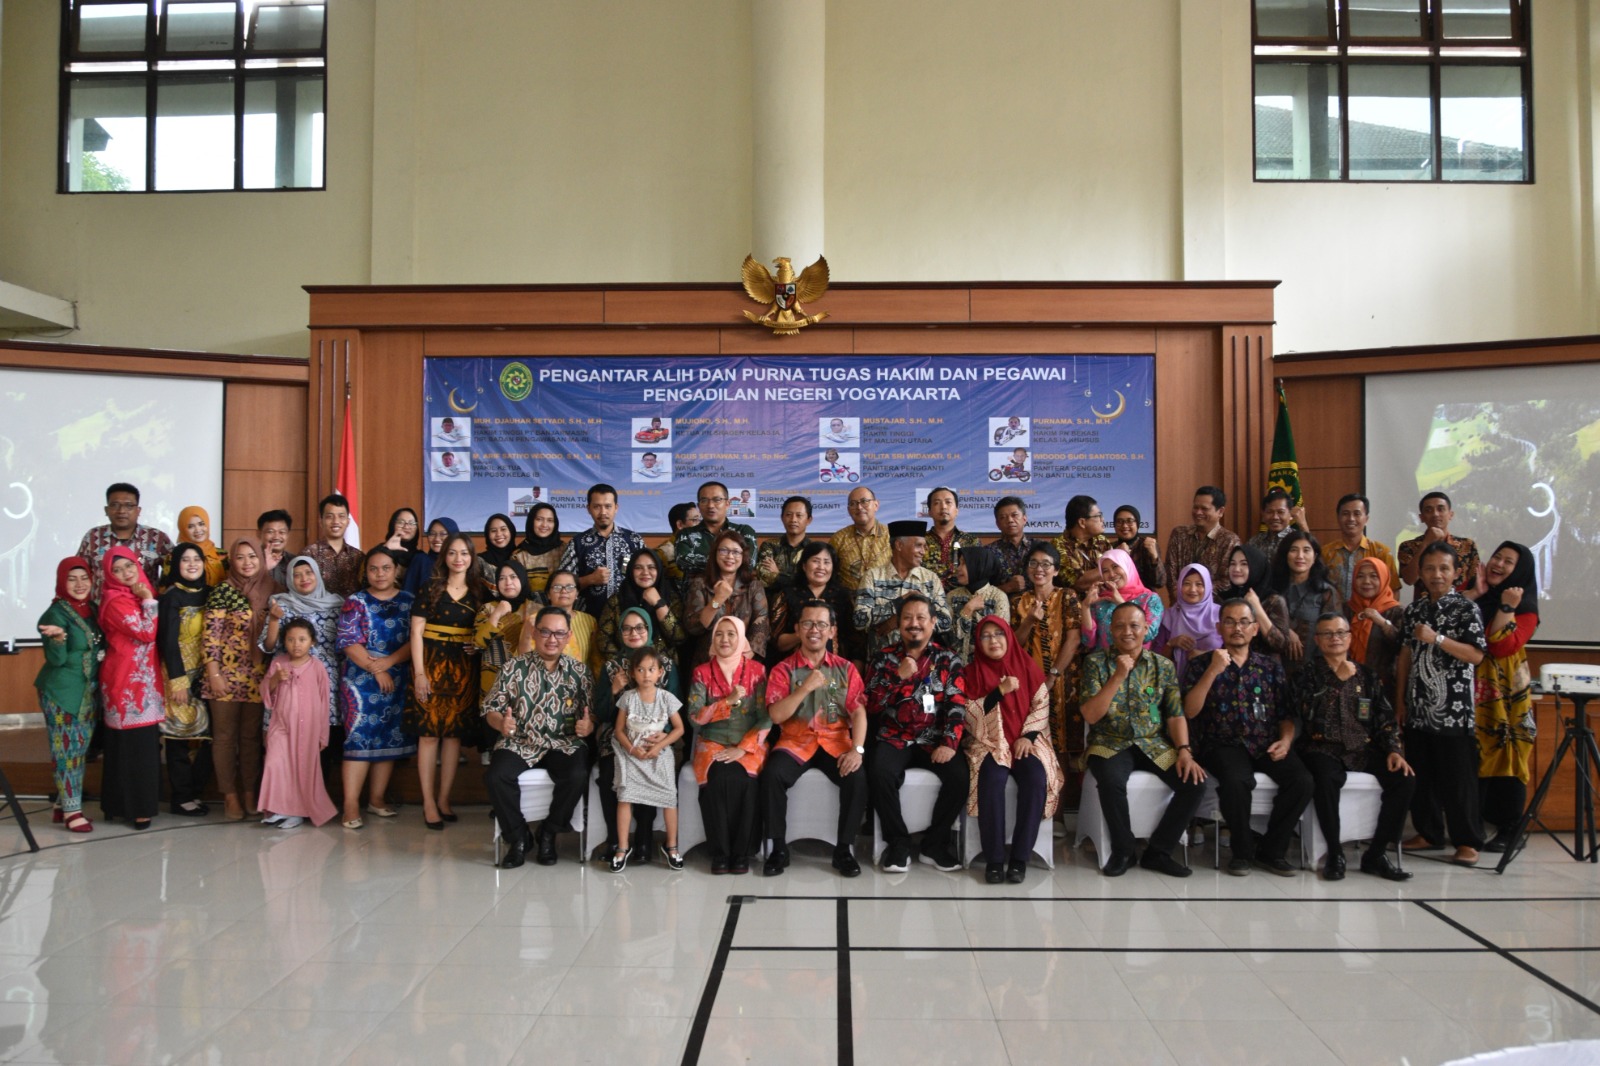 Pengantar Alih dan Purna Tugas Hakim dan Pegawai Pengadilan Negeri Yogyakarta